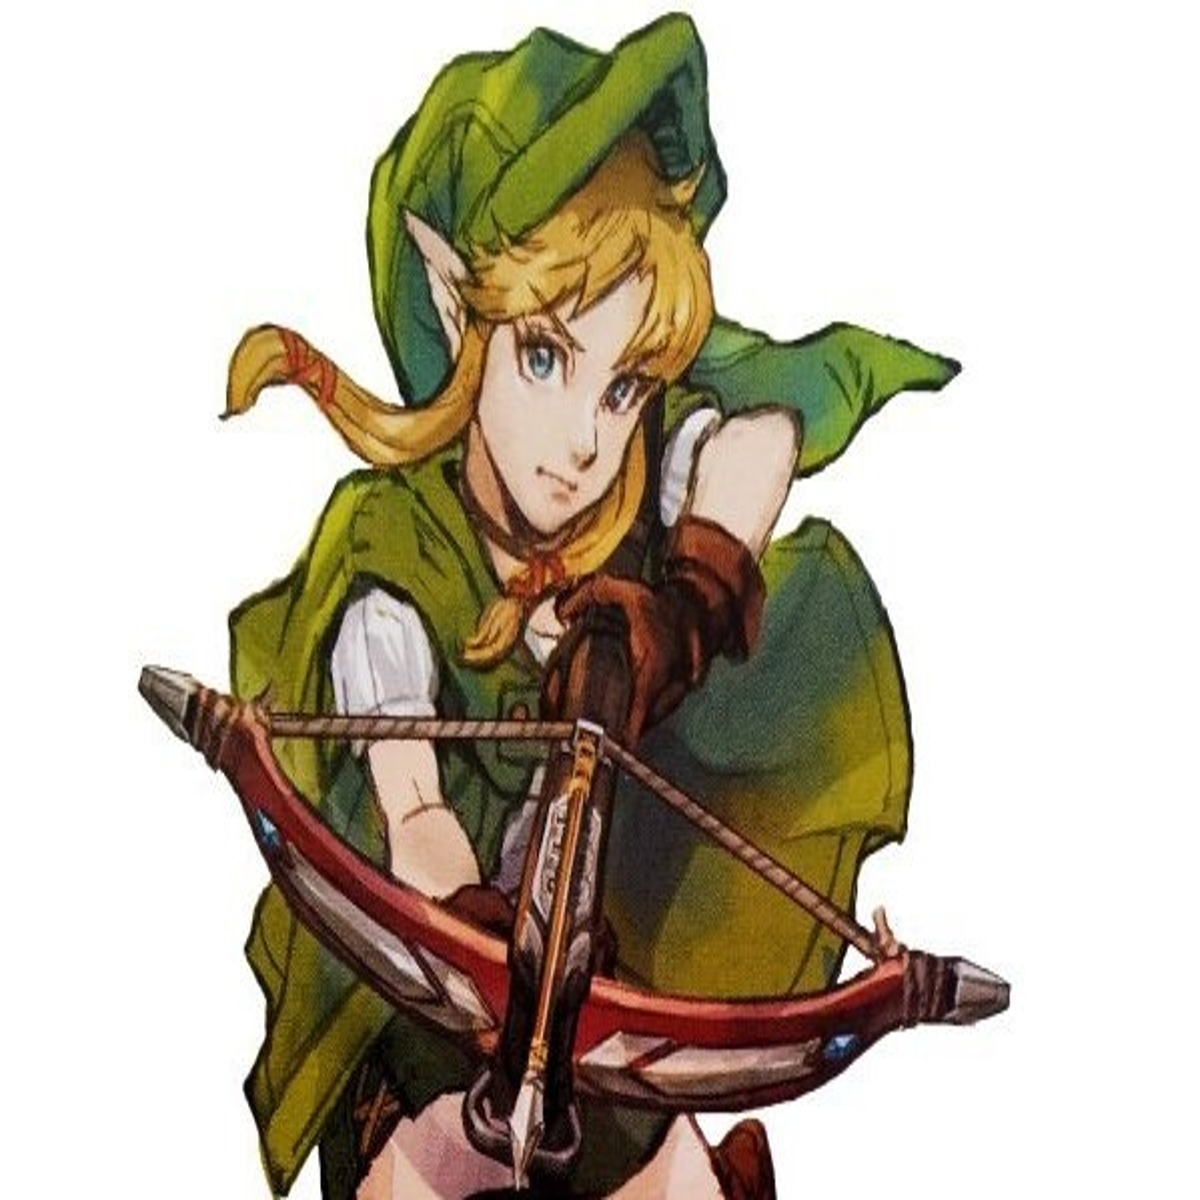 The Legend of Zelda Link illustration, Hyrule Warriors Universe of